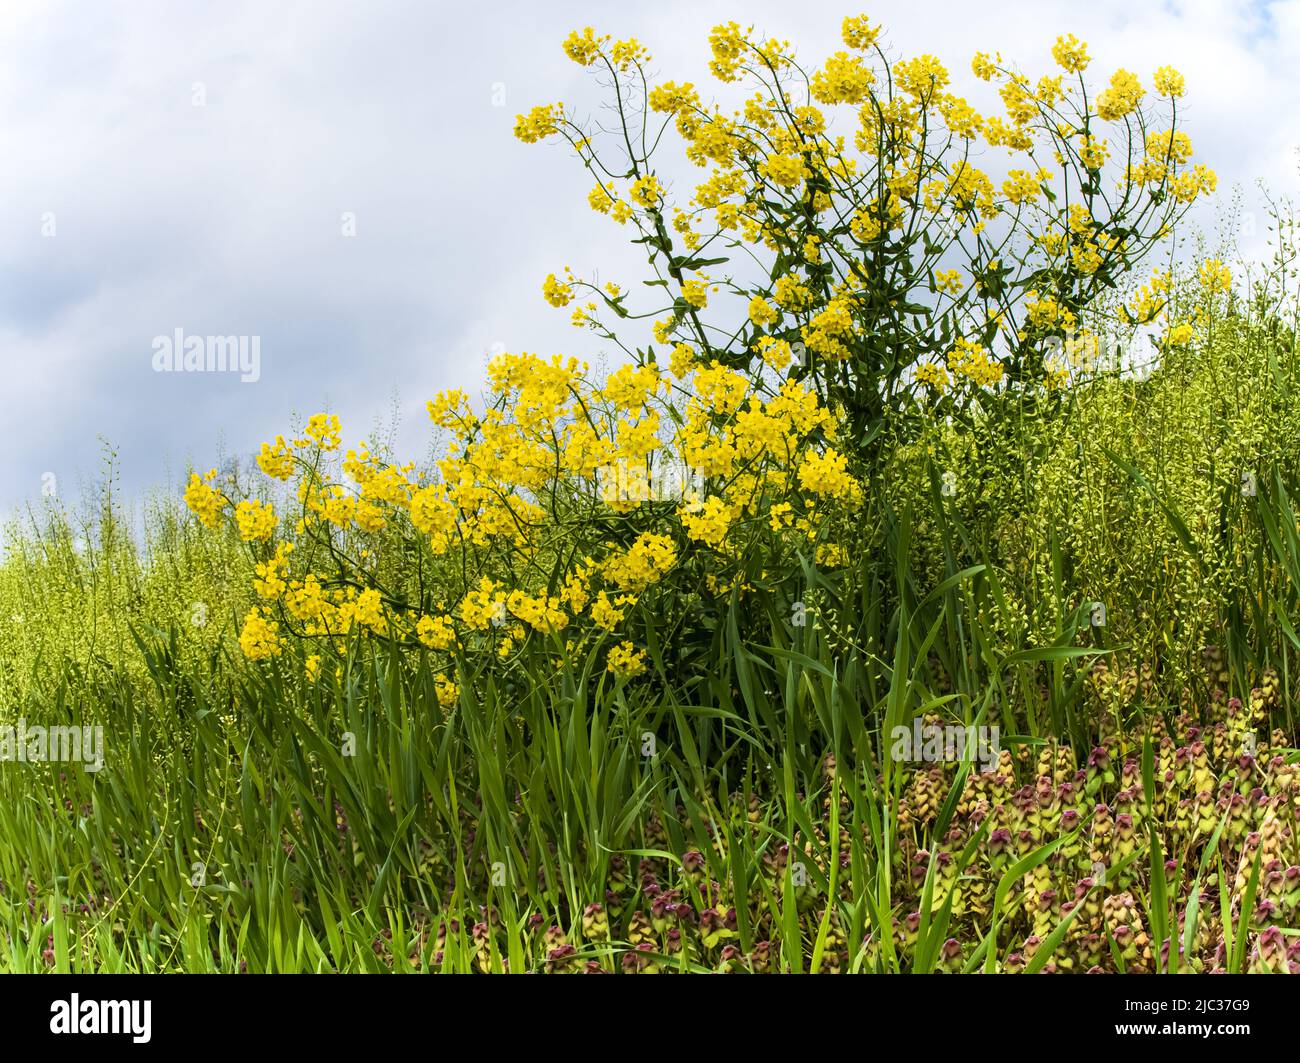 Una pianta di senape gialla fiorita su una collina circondata da verde verde primavera e sotto un cielo blu nuvoloso in primavera o estate, Pennsylvania Foto Stock